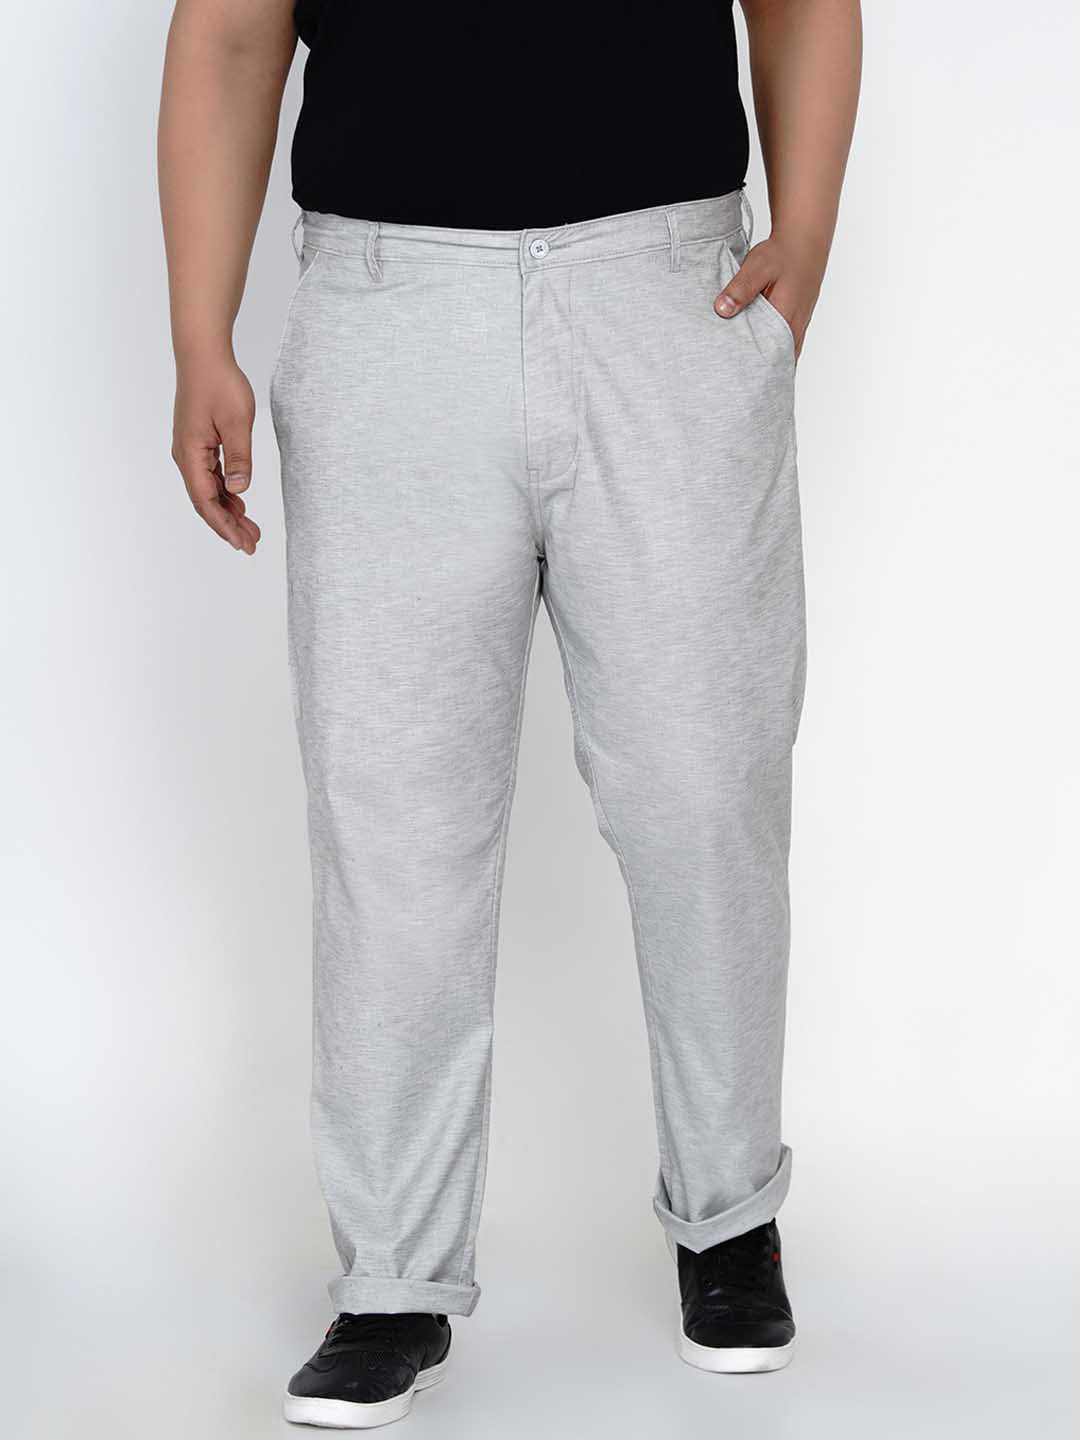 bottomwear/trousers/JPTR2165A/jptr2165a-4.jpg